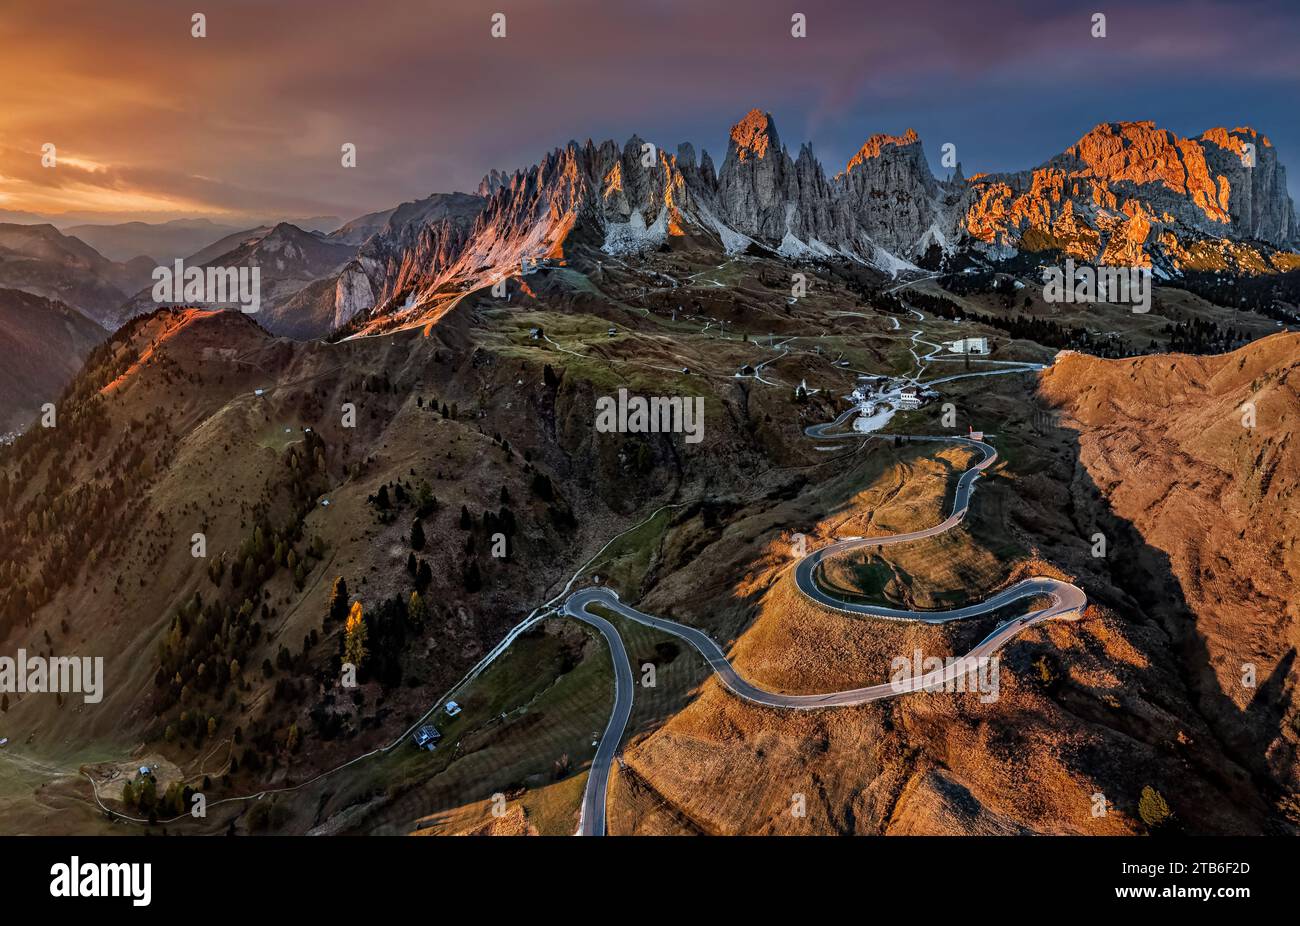 Grödner Pass, Italien - Luftpanorama auf die kurvigen Straßen des berühmten Grödner Passes mit den Gipfeln des italienischen Pizes de Cir Stockfoto